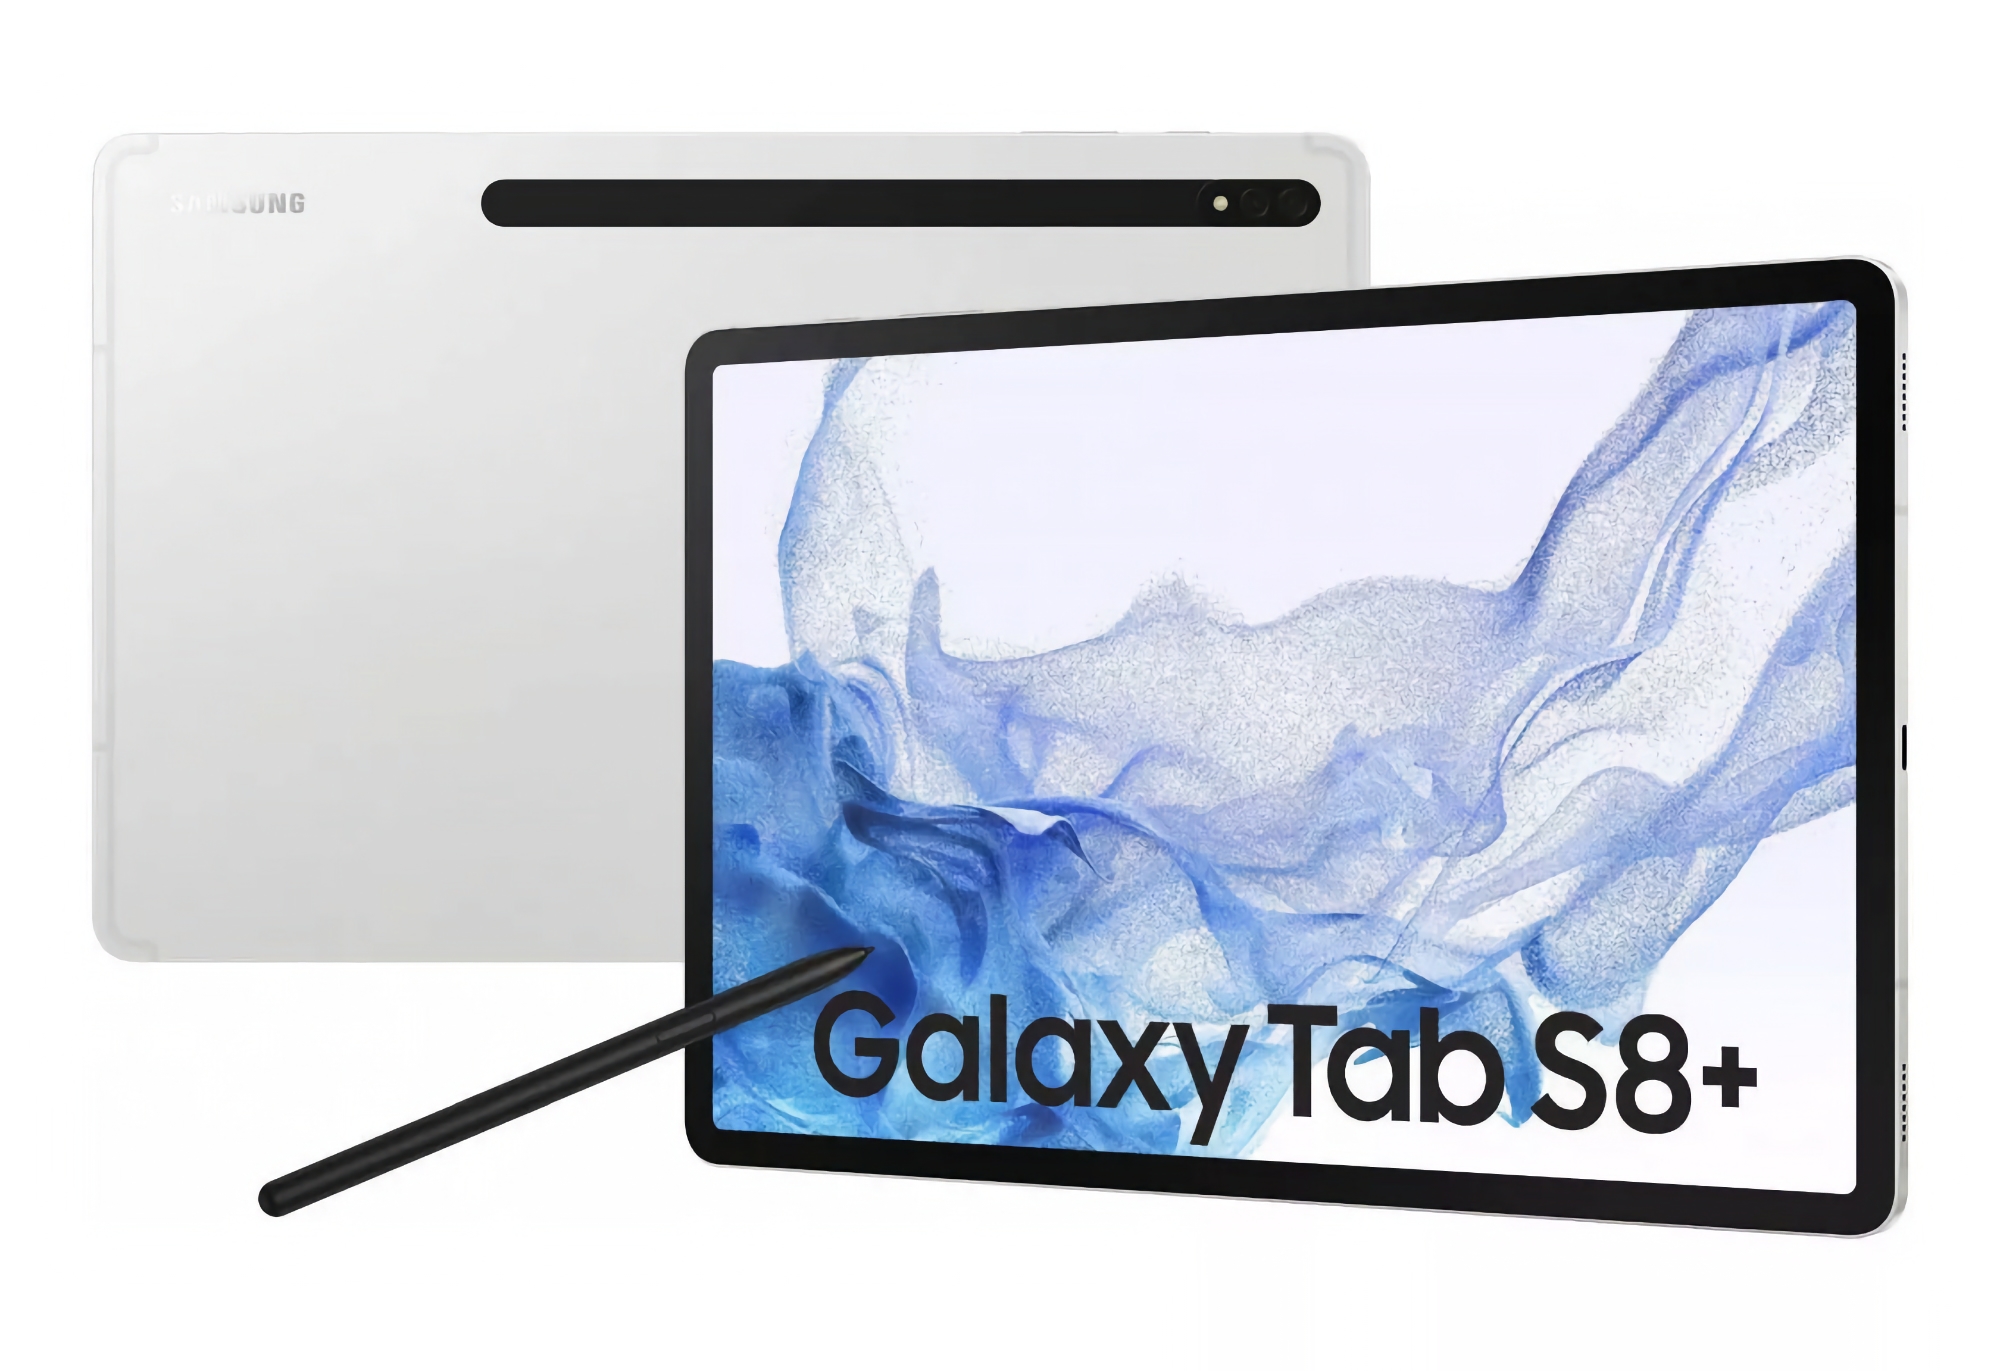 Samsung Galaxy Tab S8+ з Wi-Fi та накопичувачем на 128 ГБ можна купити на Amazon зі знижкою $300